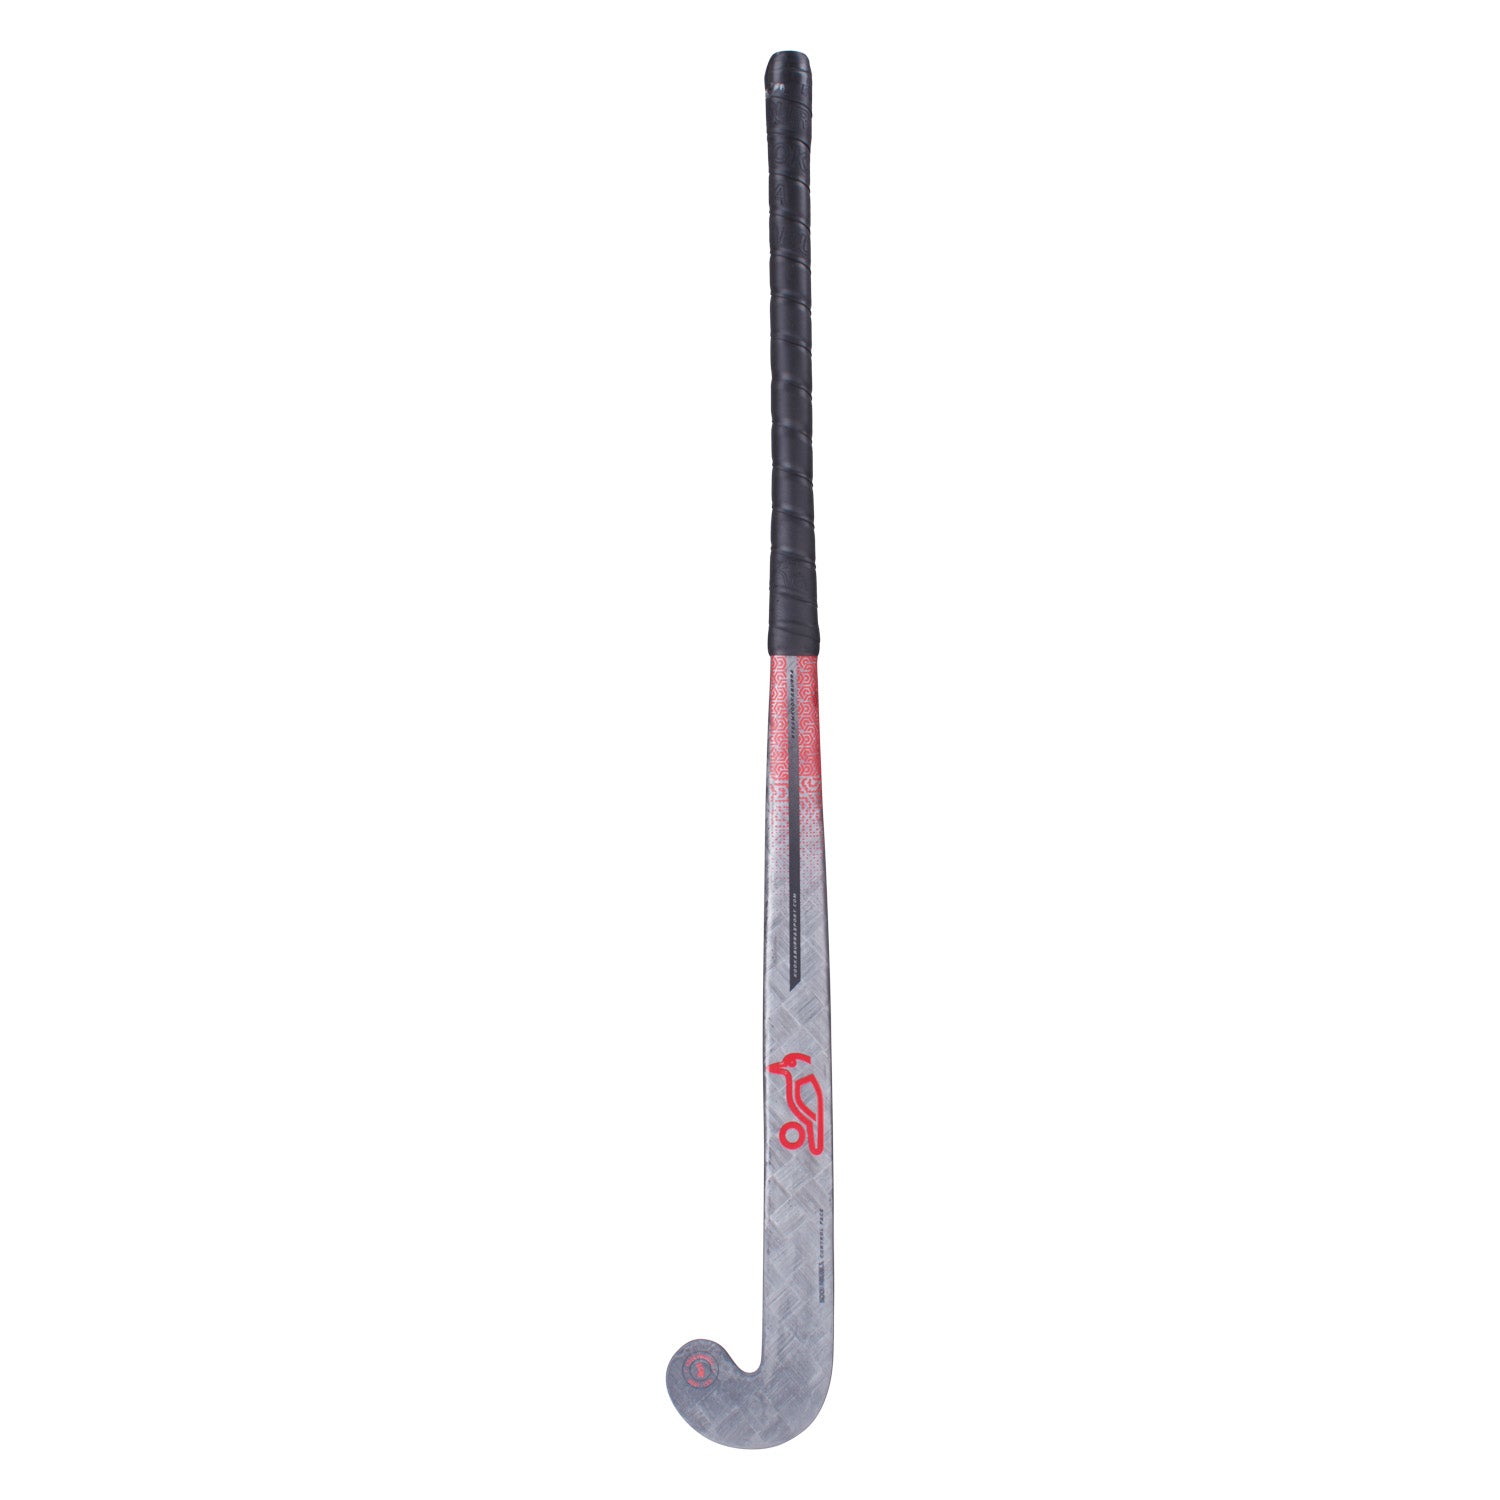 Kookaburra Pro Torch L-Bow 36.5 Light Hockey Stick